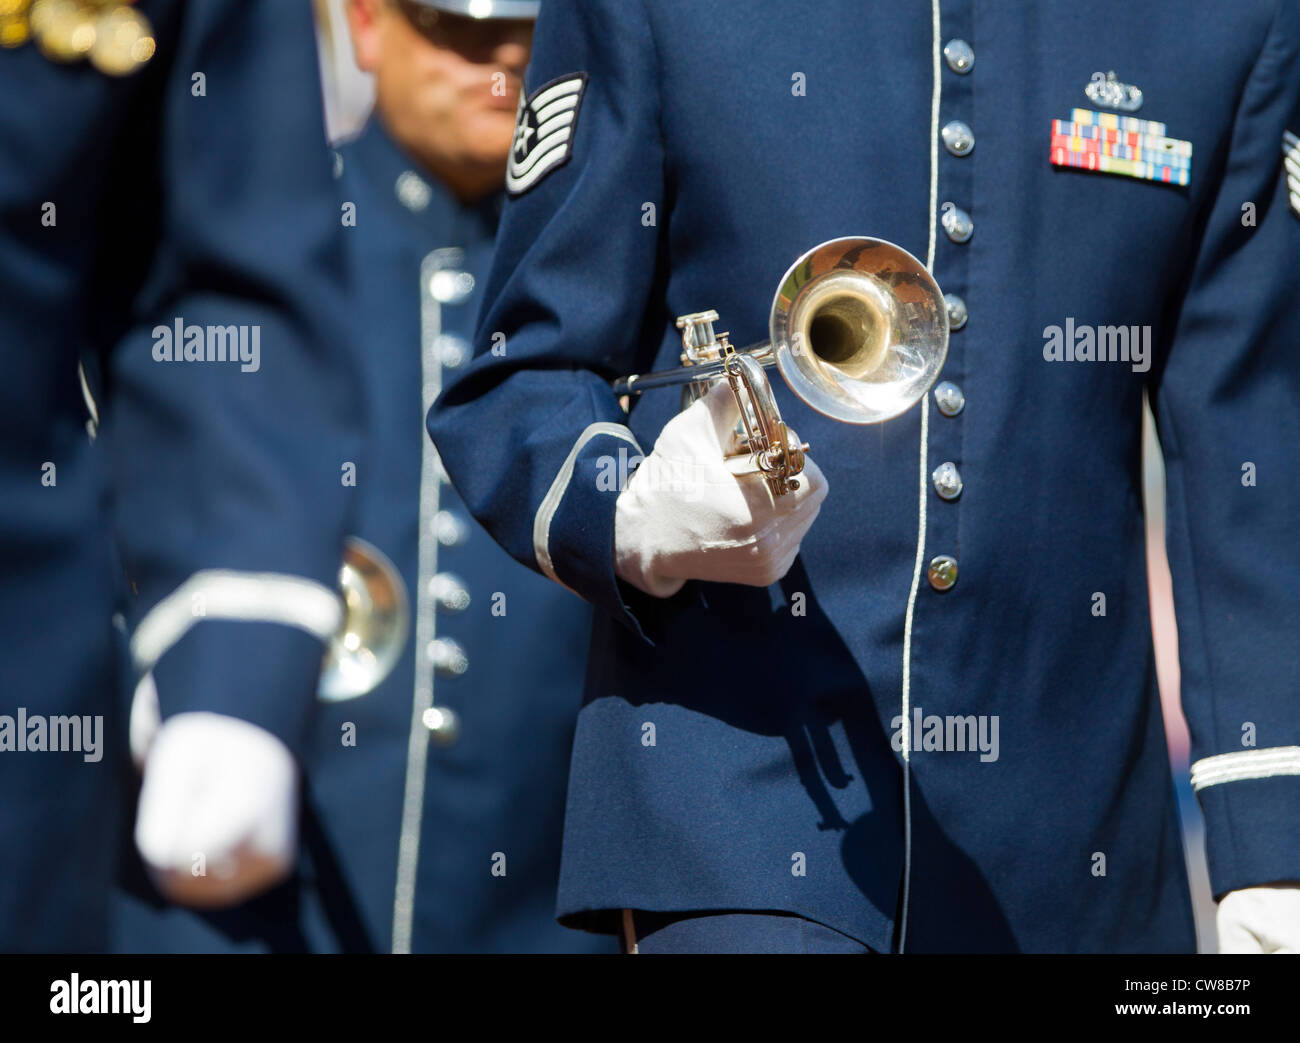 Die United States Air Force Band vor einem Baseball-Spiel Stockfoto